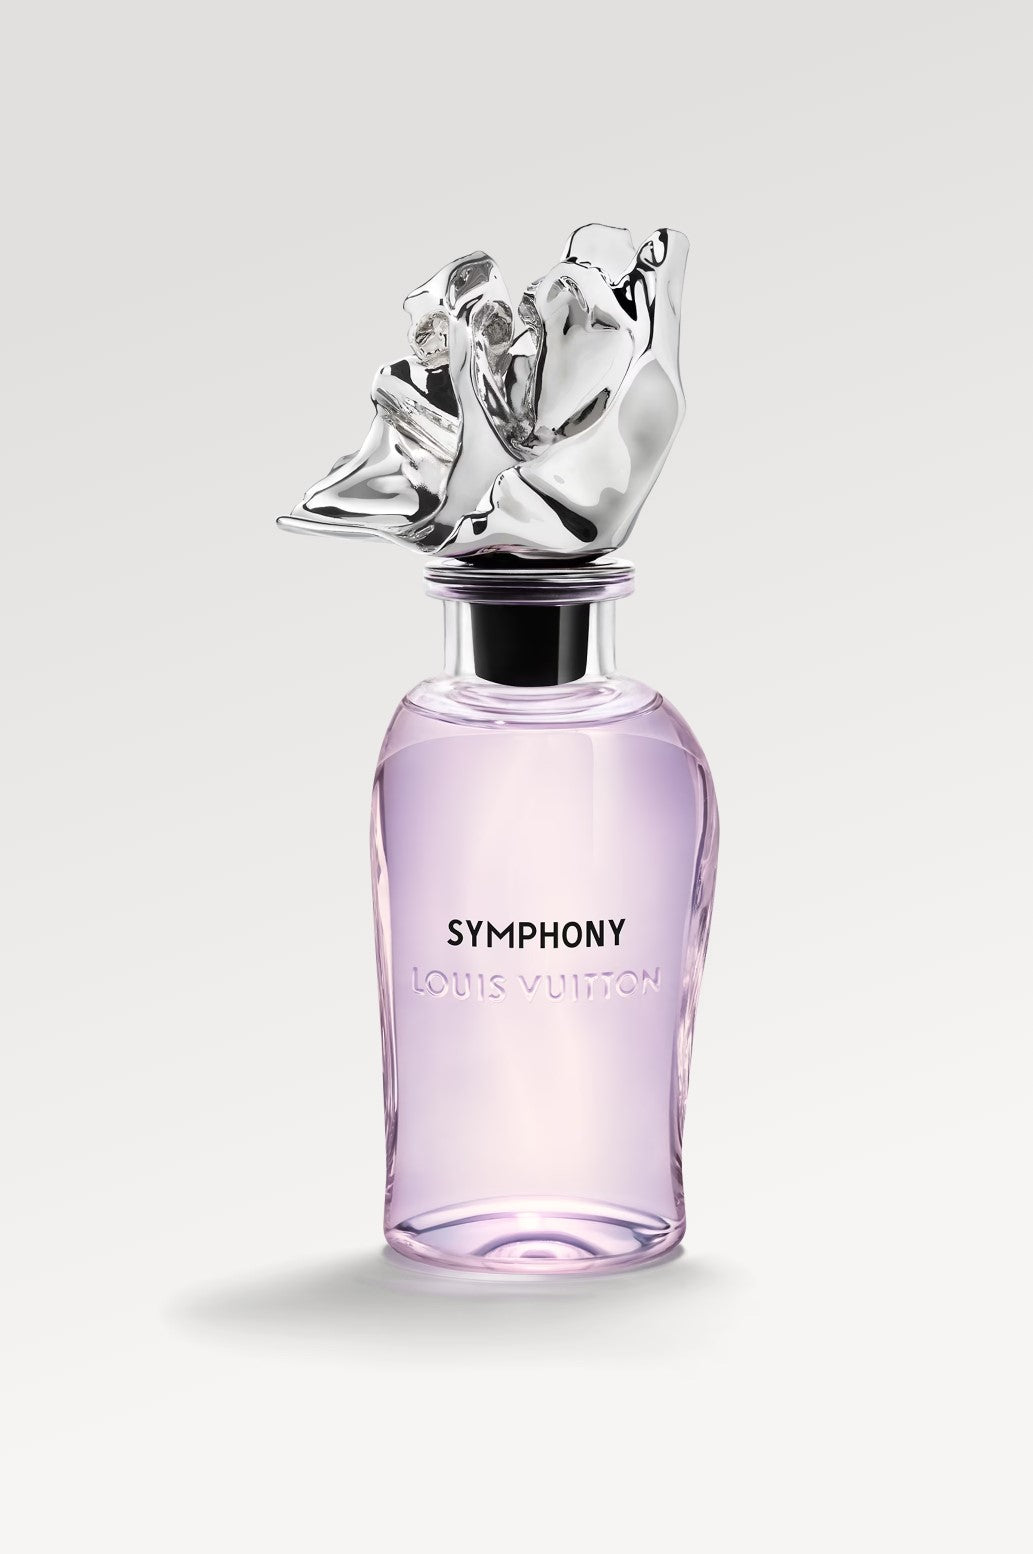 Louis Vuitton Symphony Perfume Review - A Symphony of Citrus Elegance